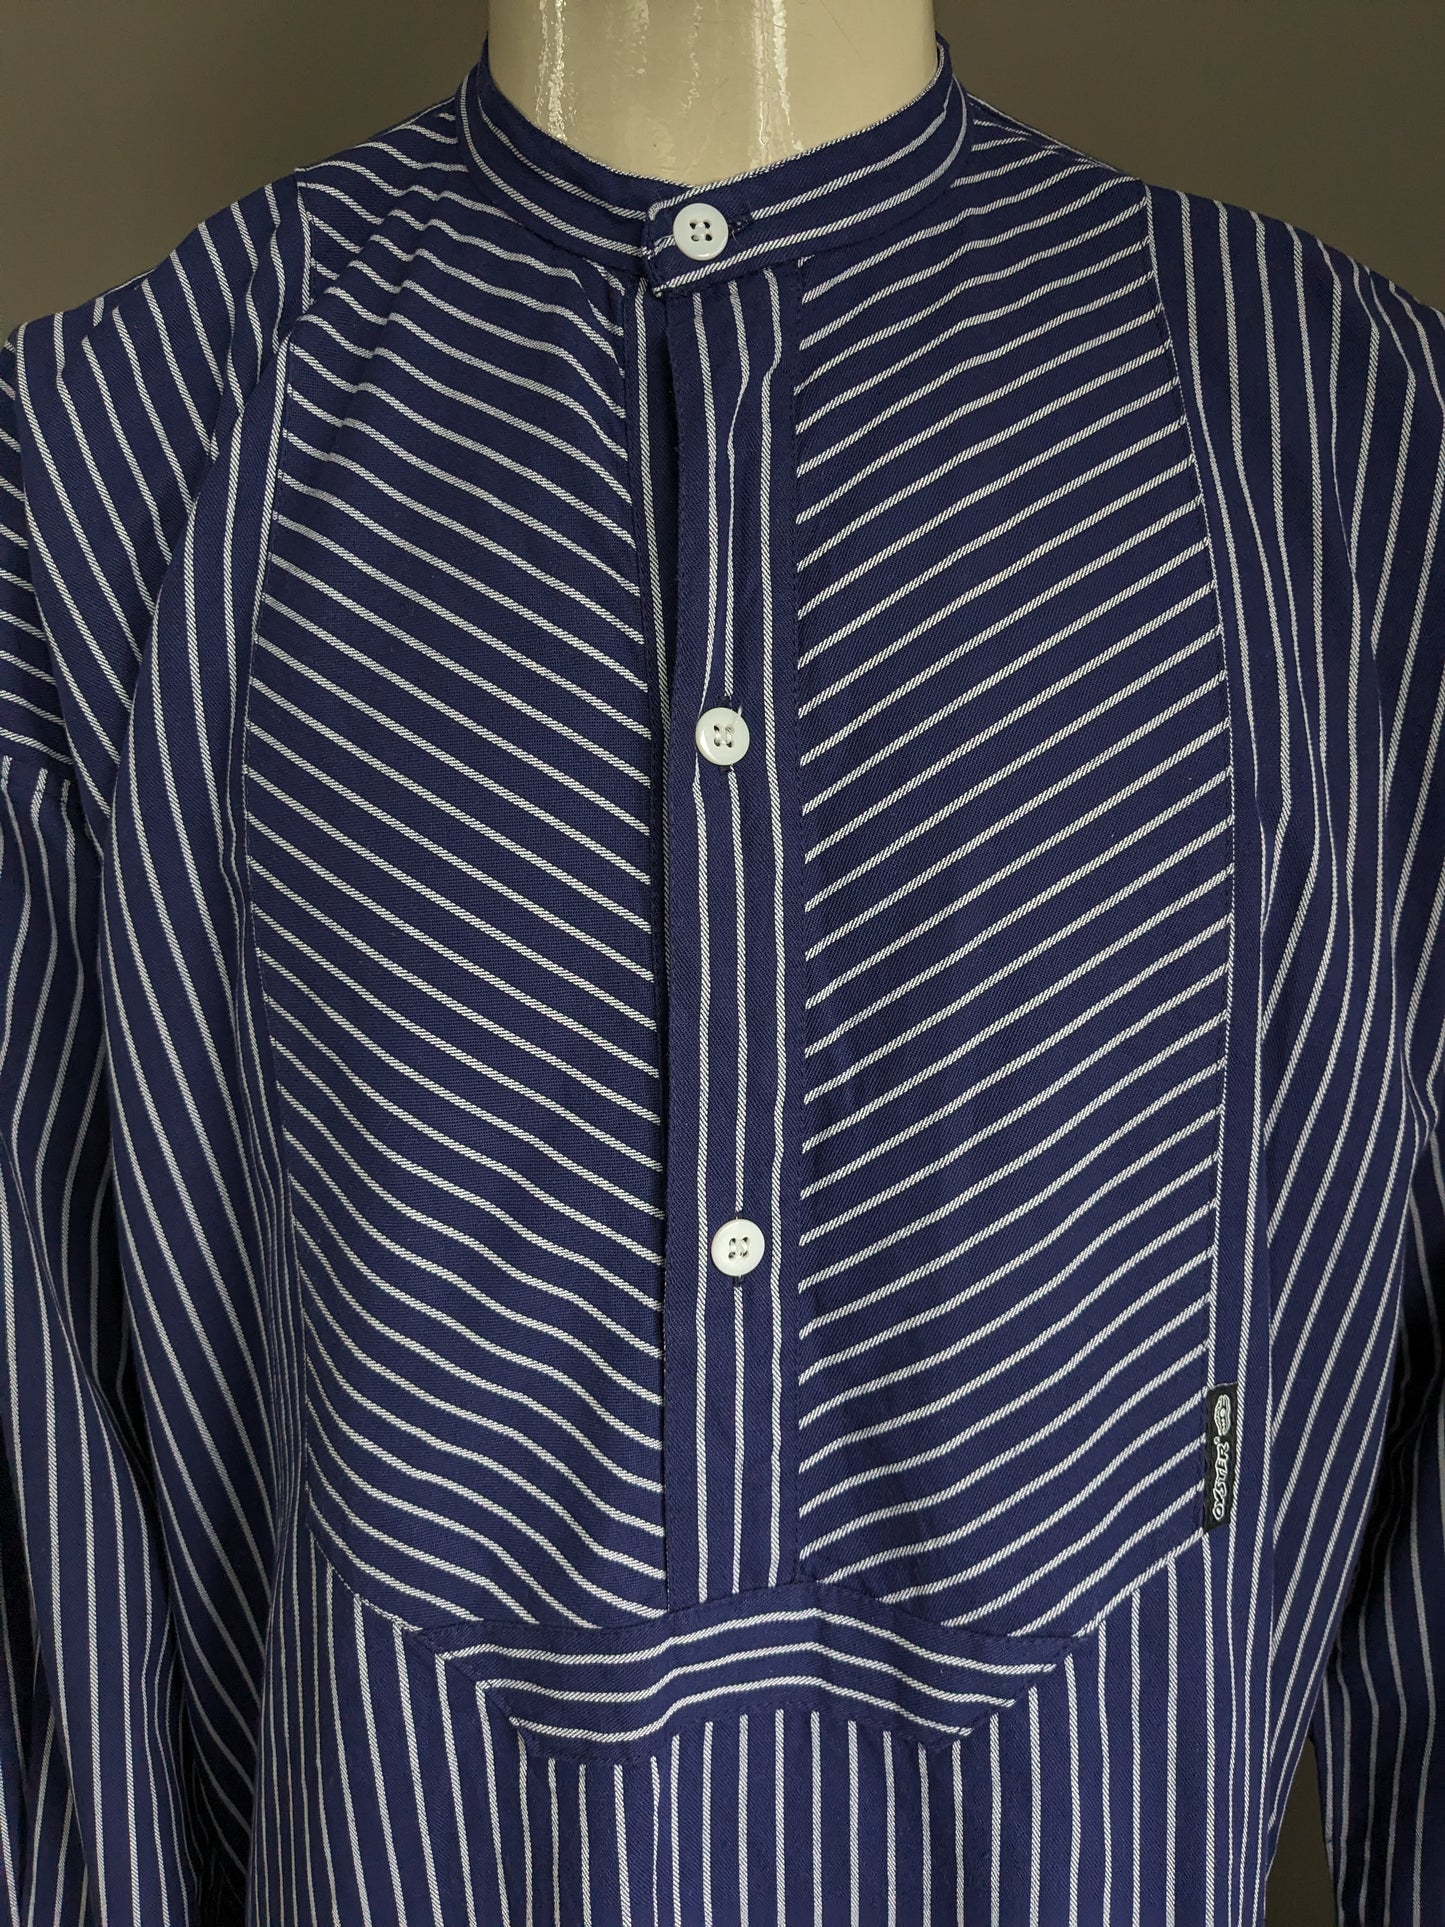 Vintage Duster Polo Pullover / Hemd mit erhöhtem / Bauern / Mao -Kragen. Blau weiß gestreift. Größe xxl / 2xl